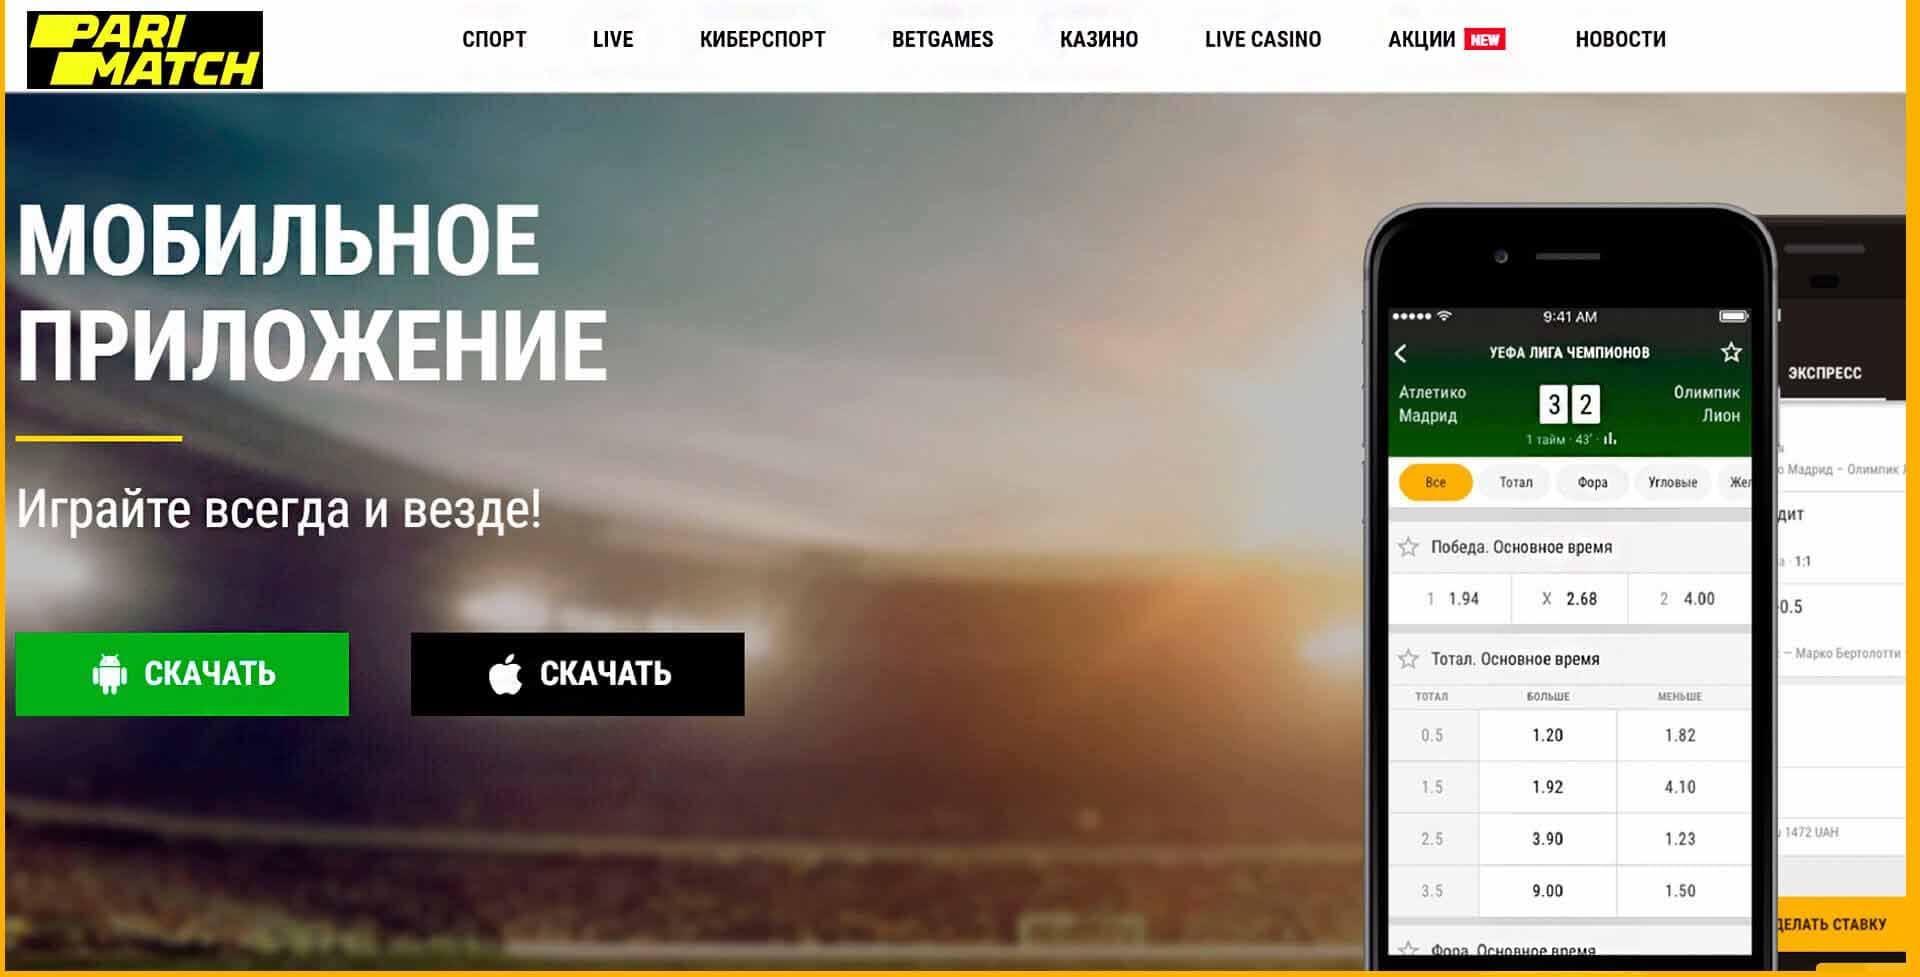 Ставки на спорт скачать бесплатно для андроид на русском казино онлайн колумбус официальный сайт